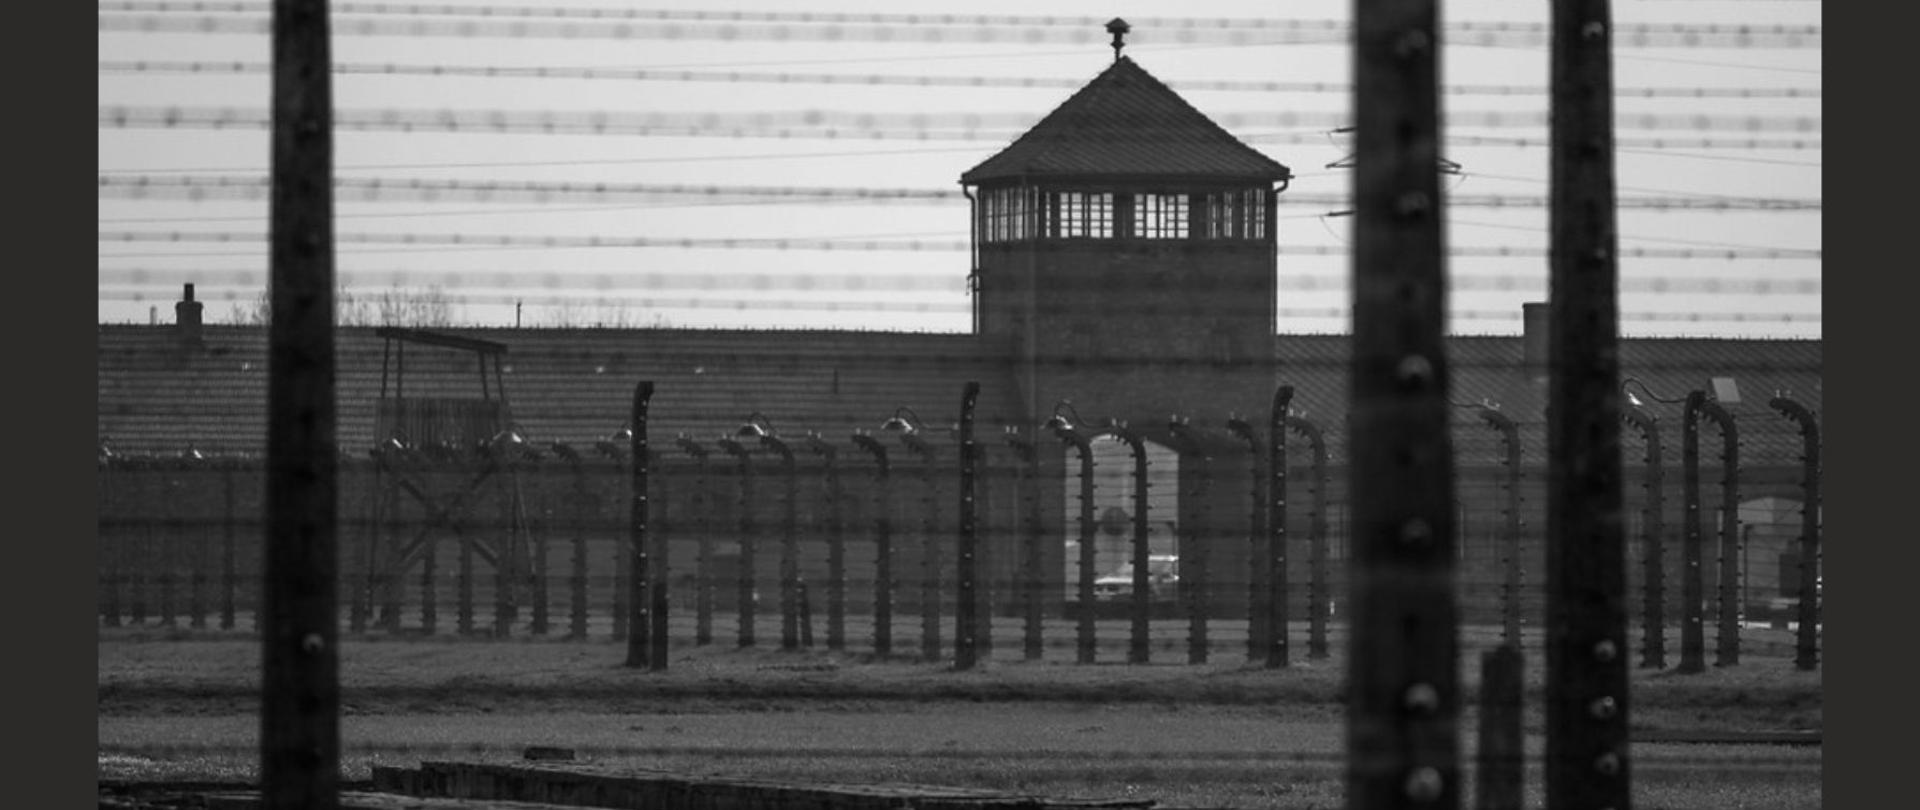 Plakat wystawy "Niemiecki Nazistowski Obóz Śmierci. Konzentrationslager Auschwitz"